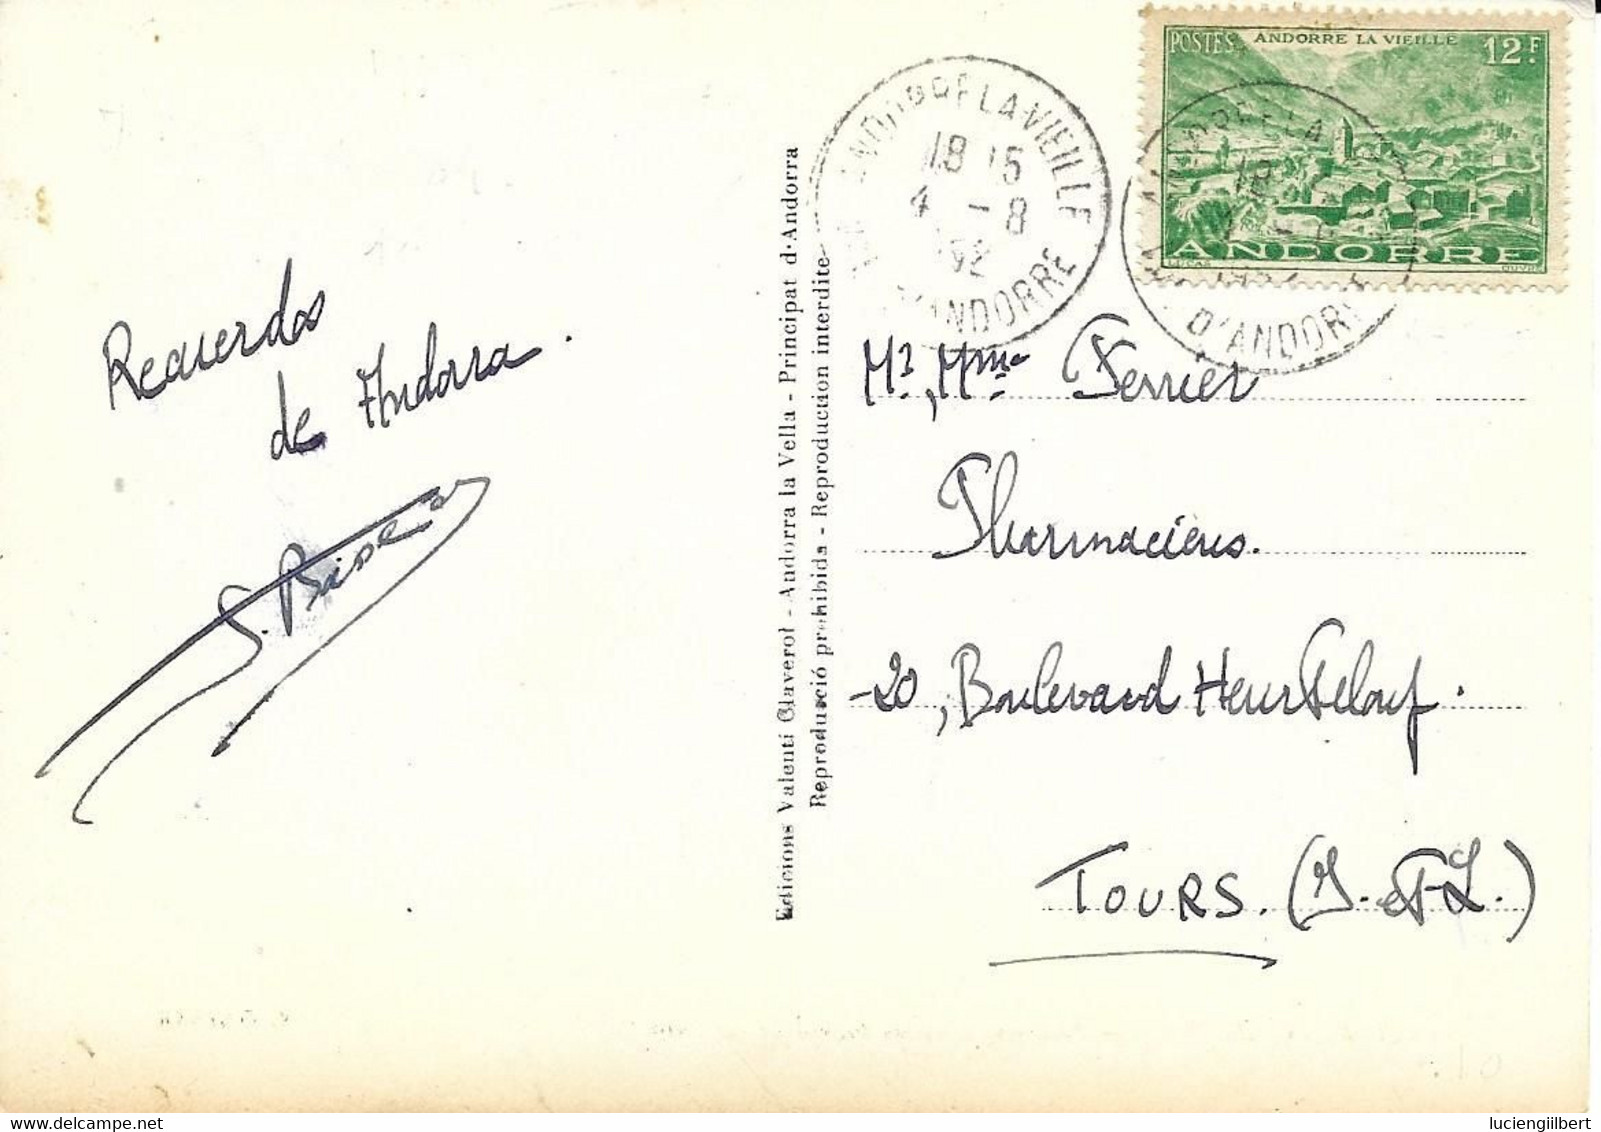 ANDORRE -    TIMBRES  N° 130 -  MAISON DES VALLEES  -  TARIF CP 6 01 49  -  1952 - CACHET MANUEL ANDORRE LA VIEILLE - Lettres & Documents